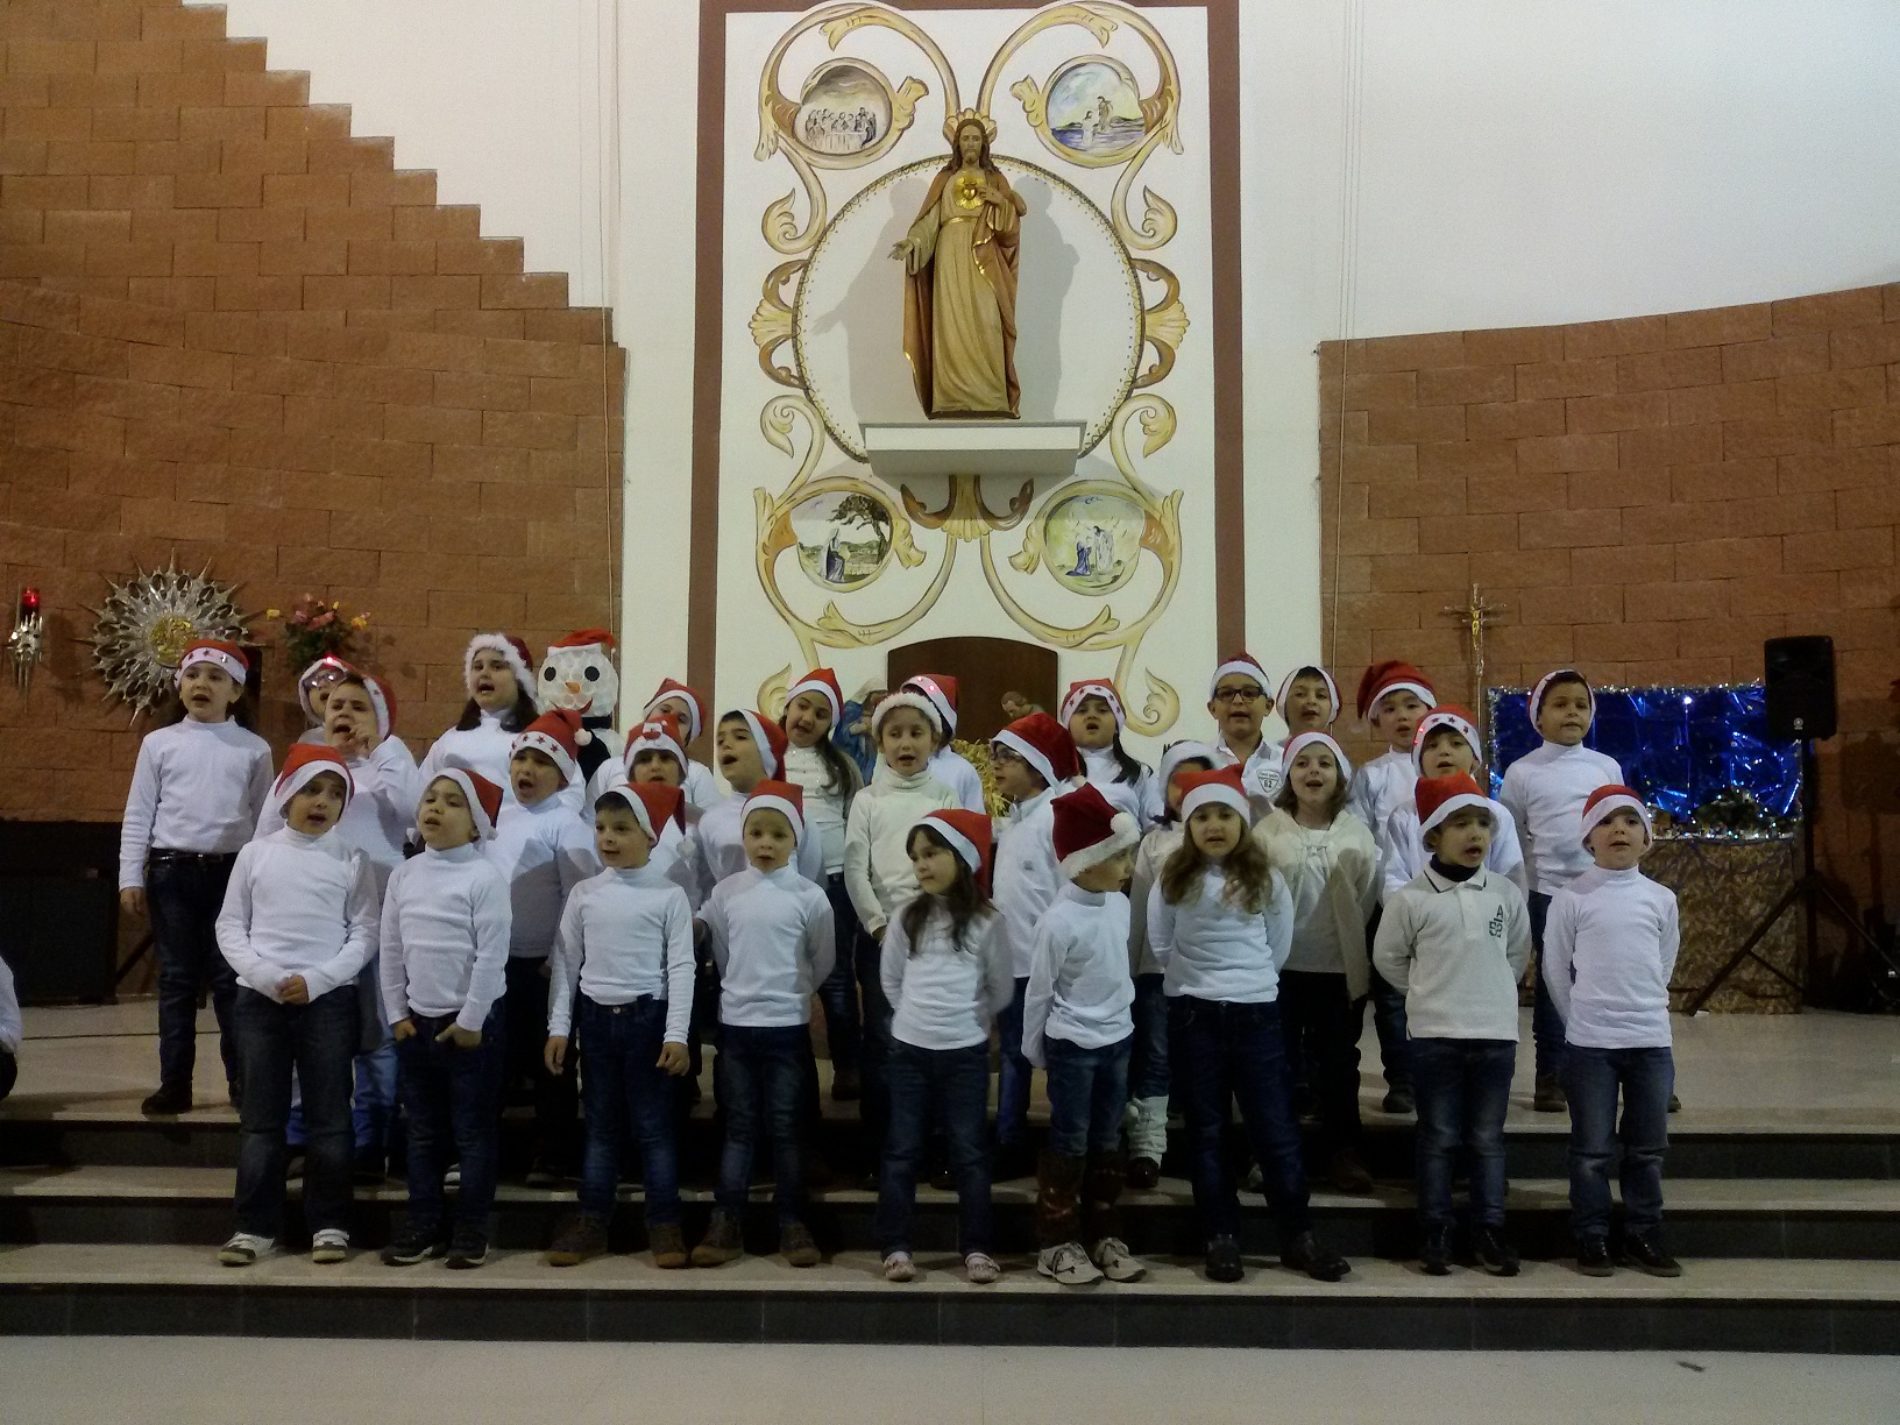 Concerto natalizio degli alunni del San Giovanni Bosco” per cancellare l’indifferenza e la cattiveria e donare pace, risate e allegria